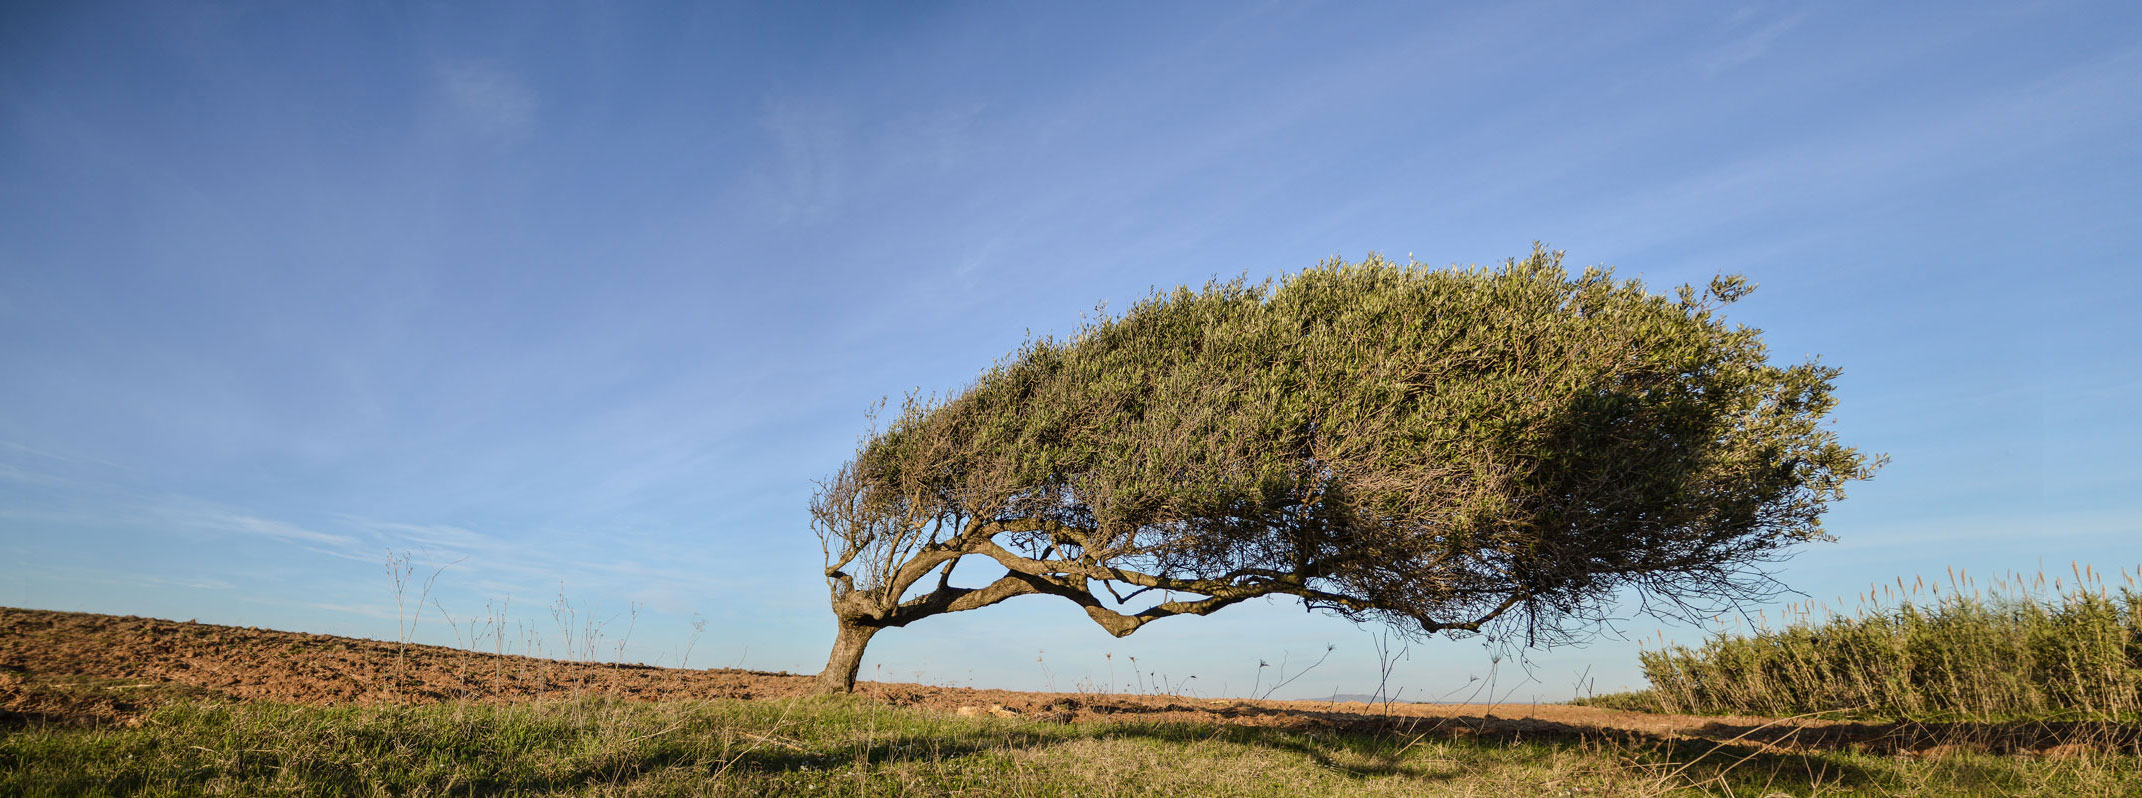 Olivenbaum-vom-Wind-geformt